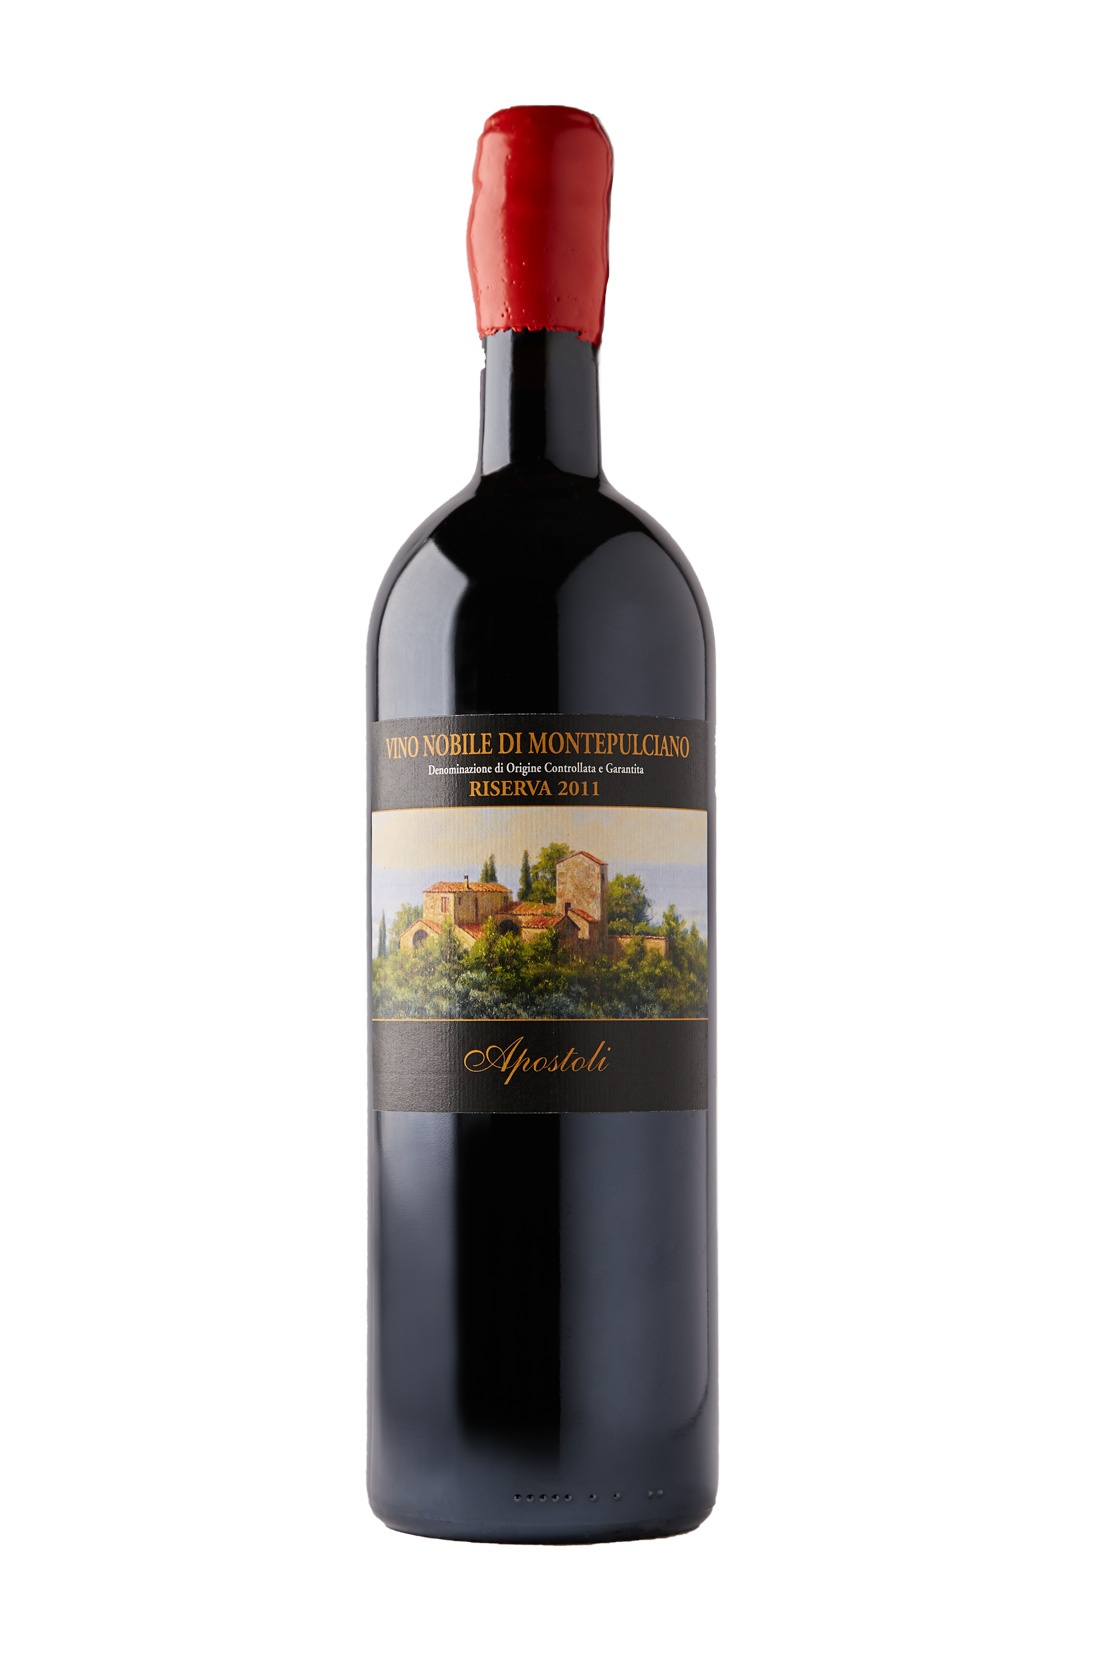 Magnum vino Nobile di Montepulciano d.o.c.g. riserva Apostoli 2012